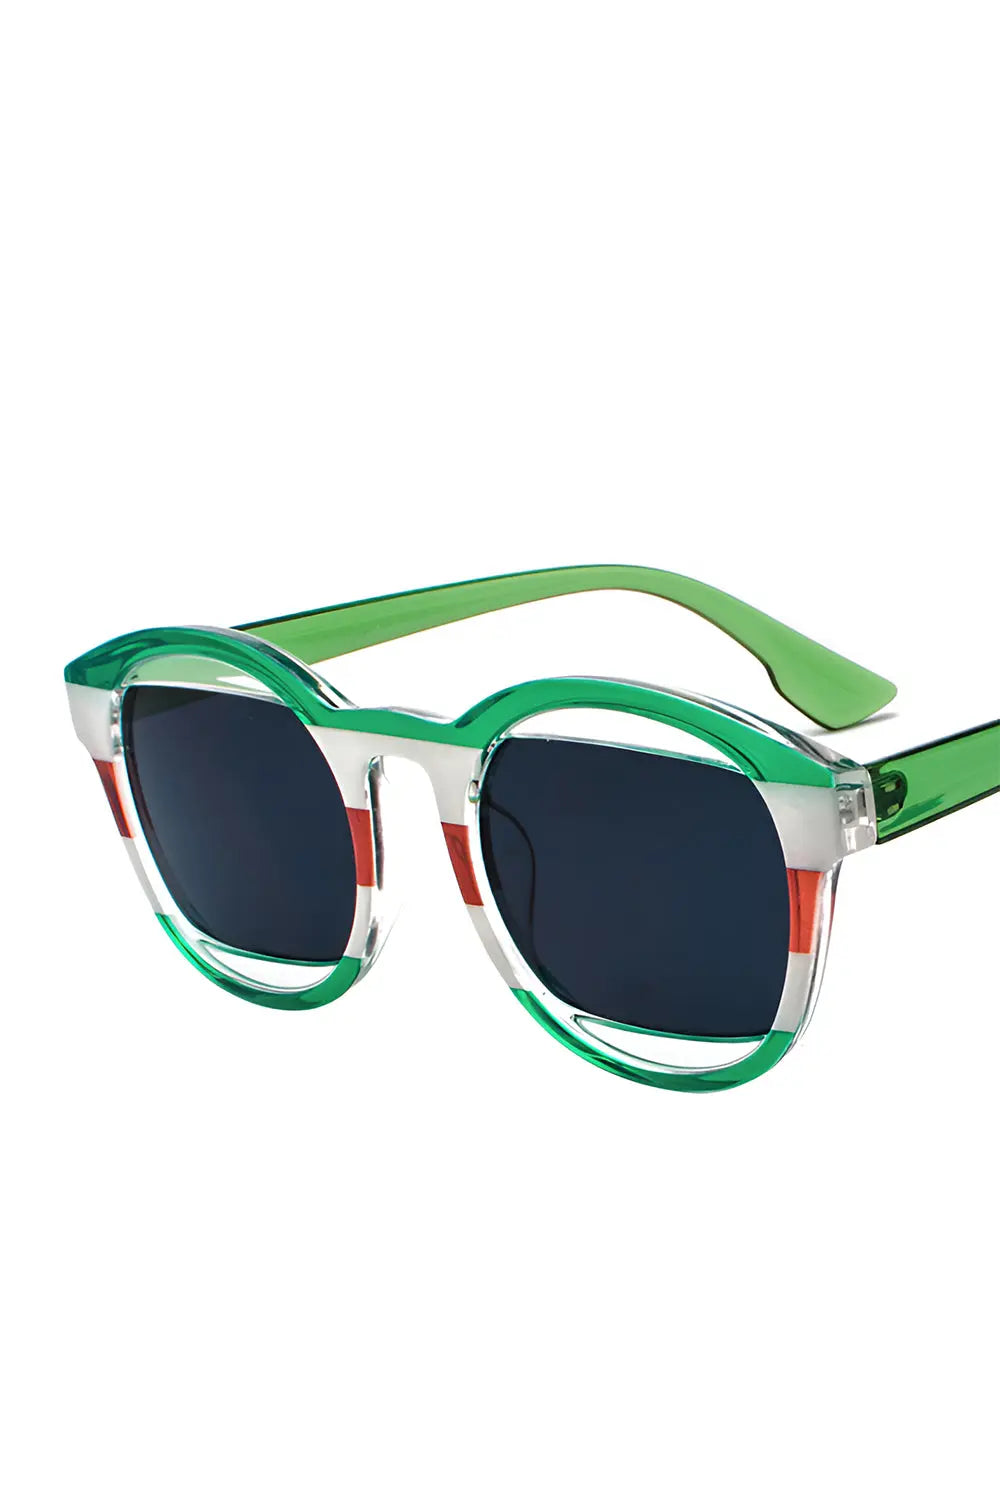 Multicolored Sunglasses - Green - Strange Clothes